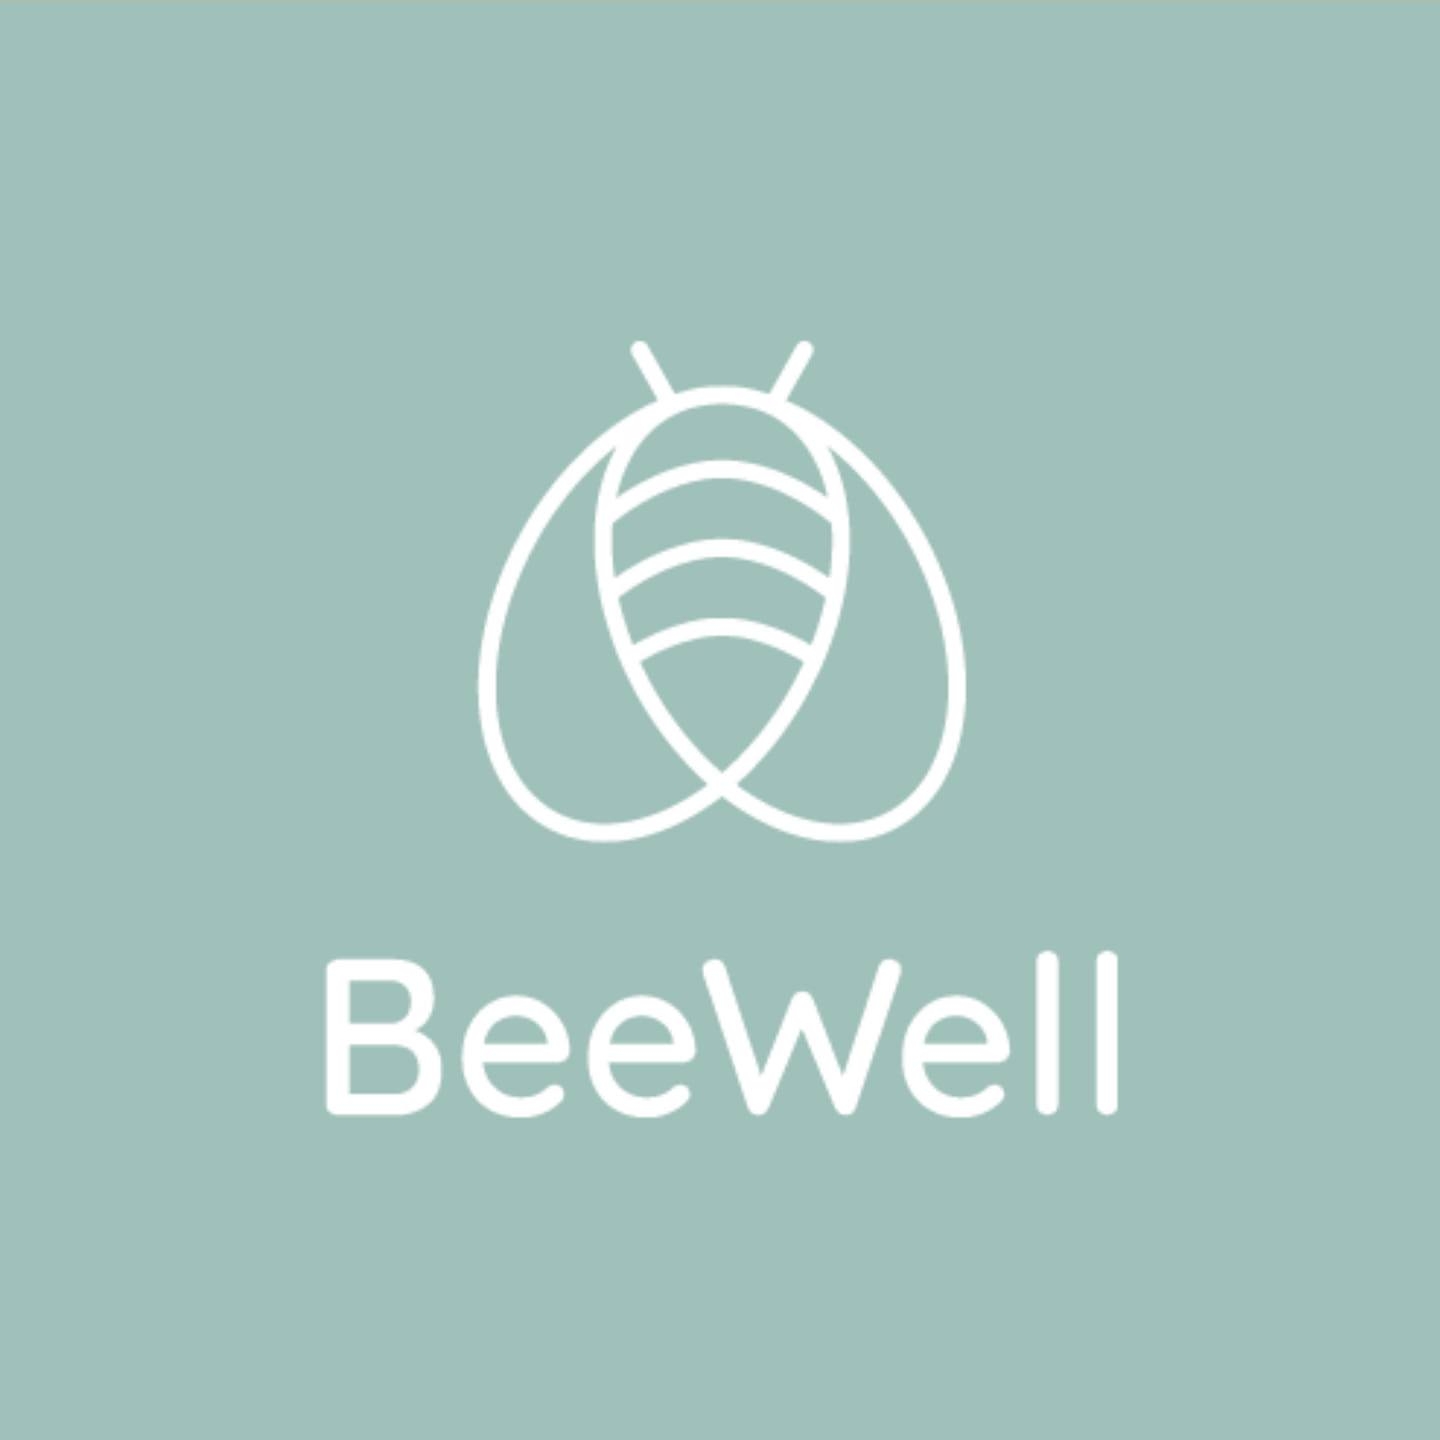 BeeWell NI